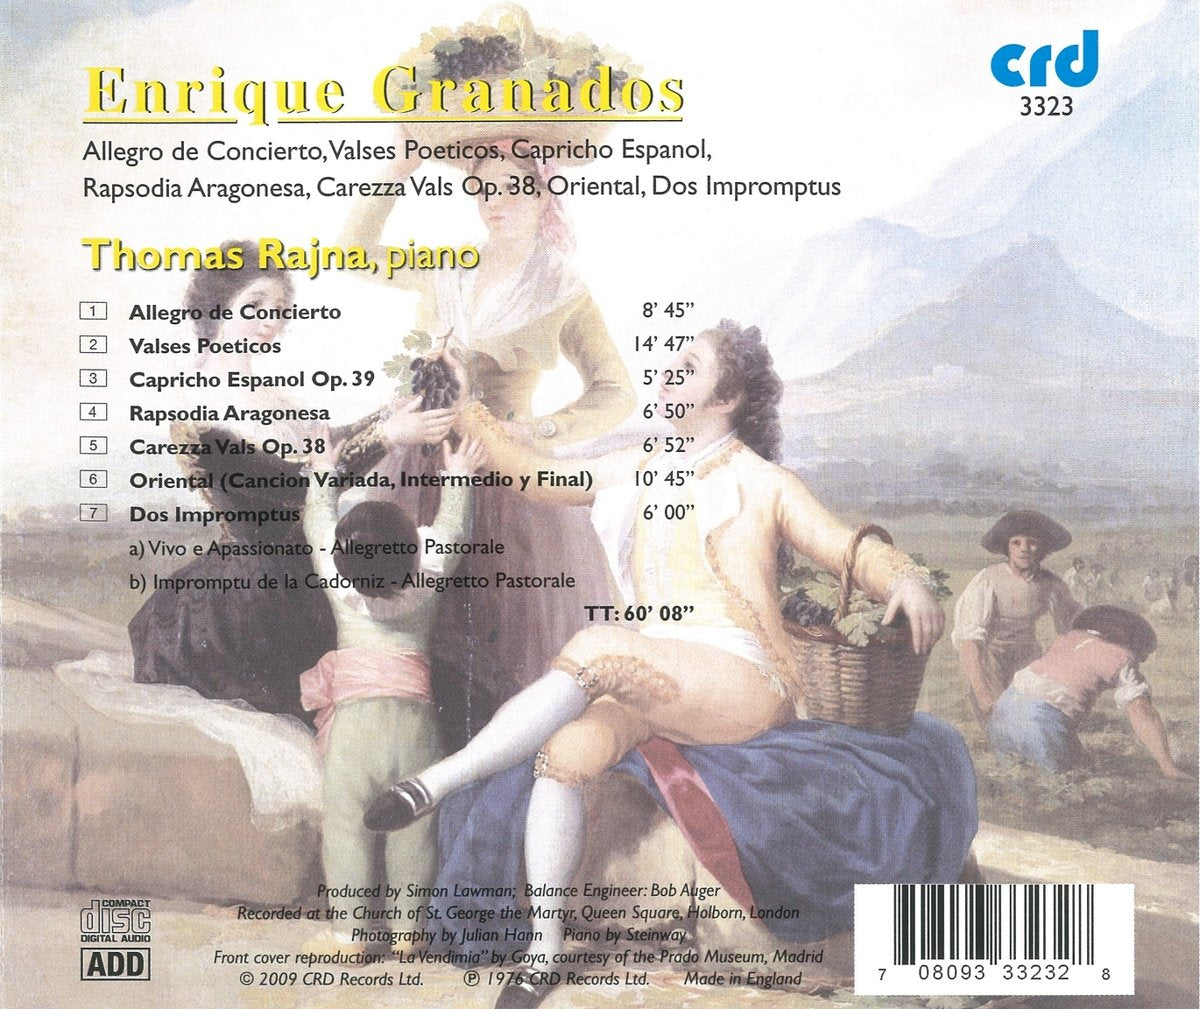 Granados: Allegro De Concierto; Valses Poeticas; Dos Impromptus and more (Complete Works, Vol. 4) - Thomas Rajna